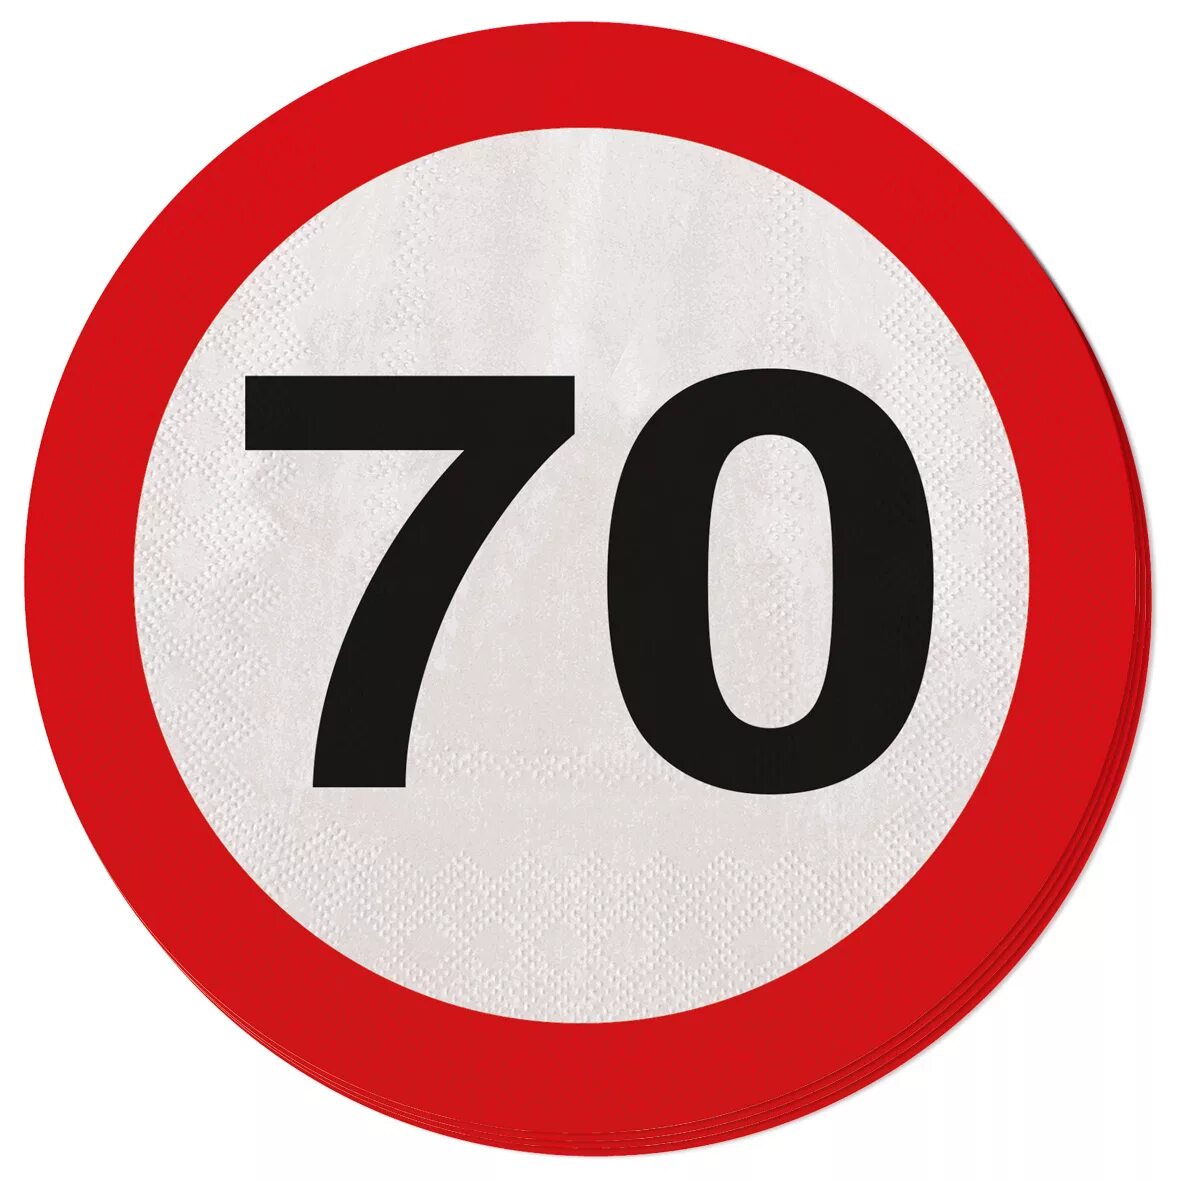 20 кругом было. Знак 70. Знак 70 на дороге. Дорожные знаки с цифрами. Дорожный знак круг.